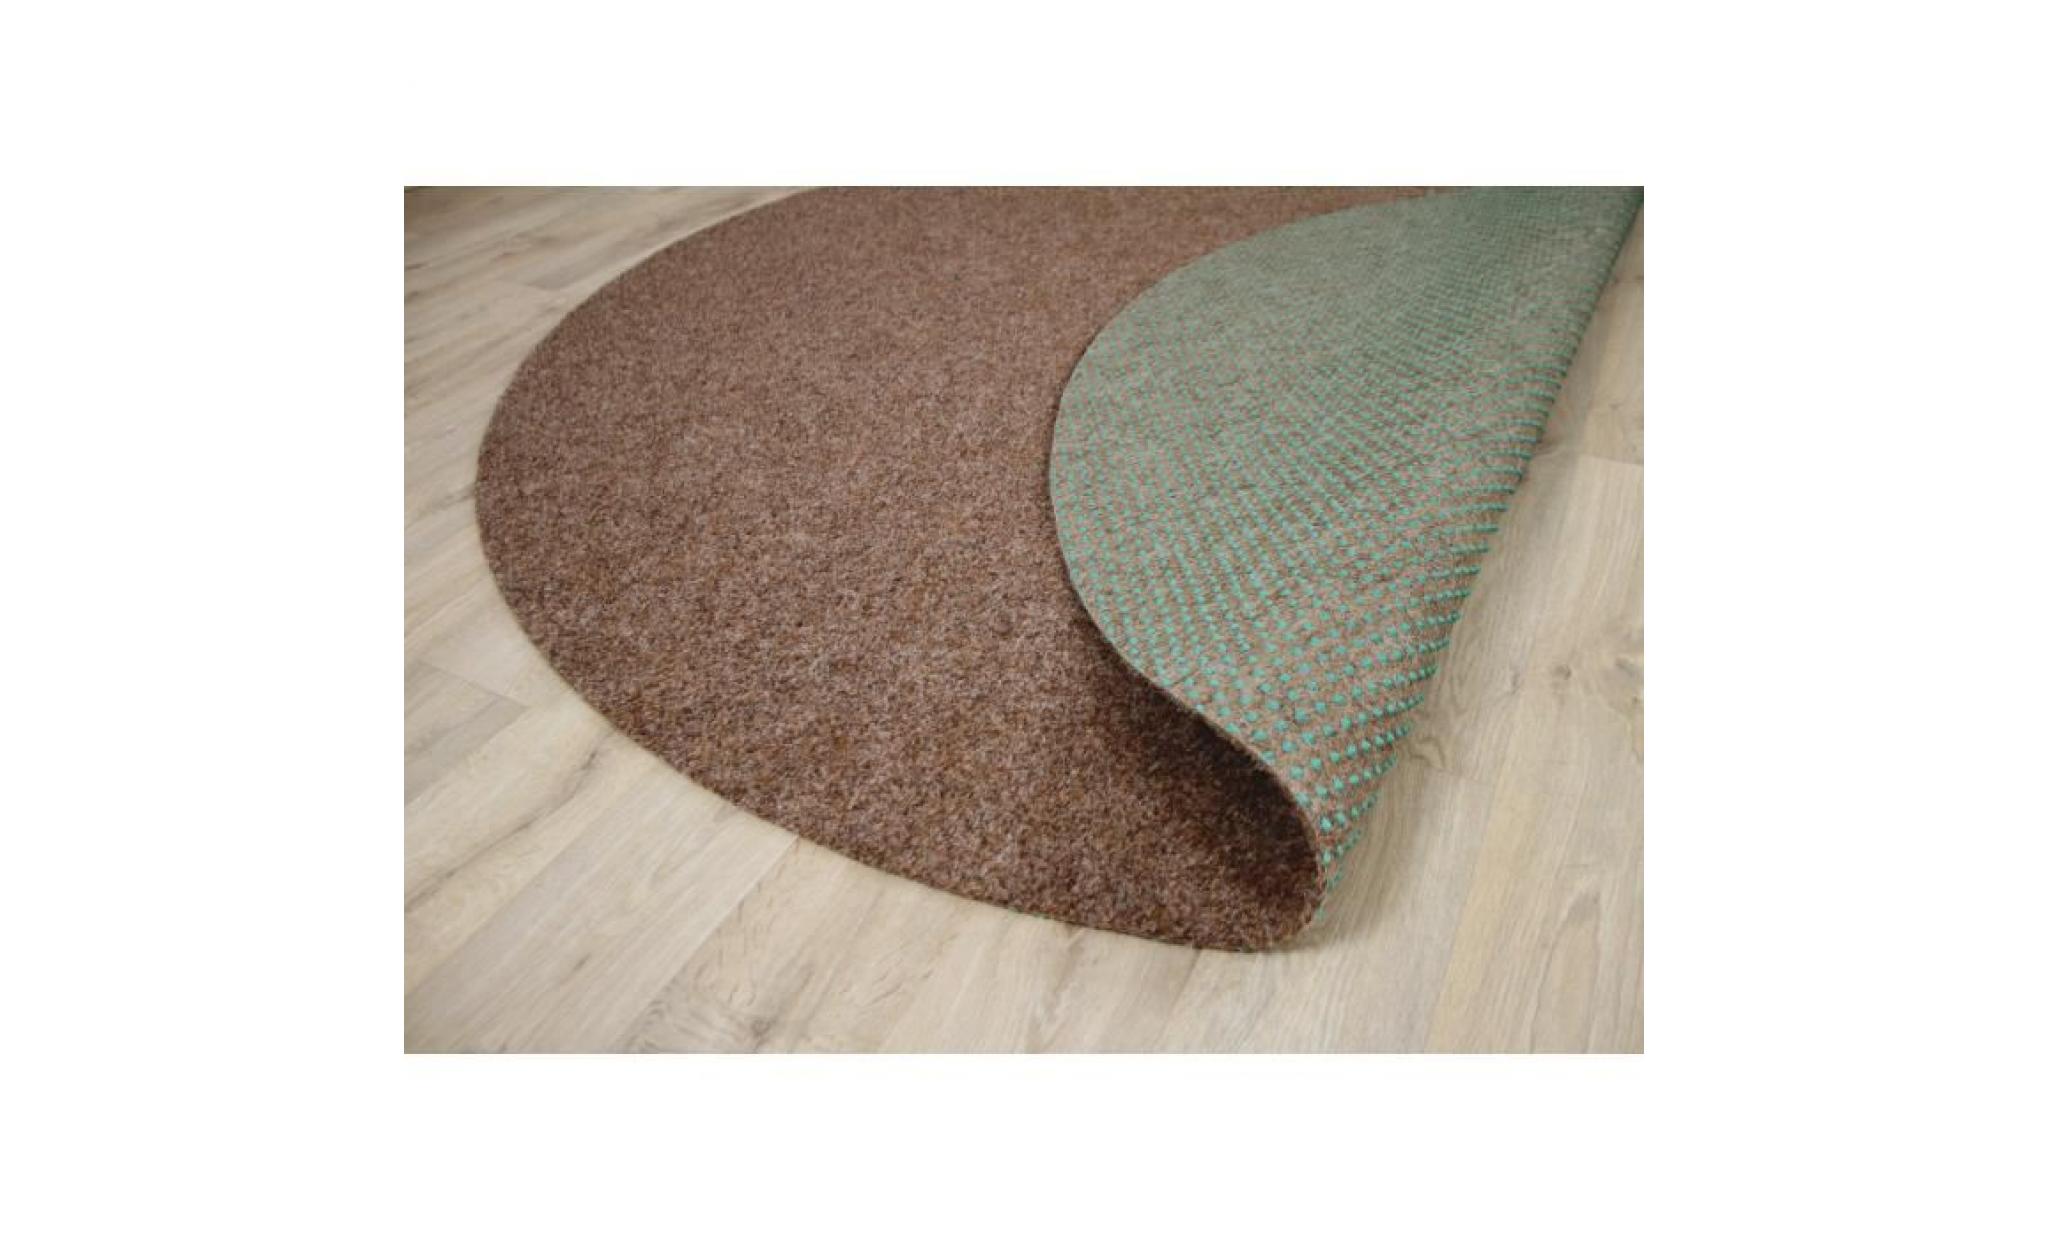 kingston   tapis type gazon artificiel rond – pour jardin, terrasse, balcon   brun   13 tailles disponibles [133 cm rond] pas cher